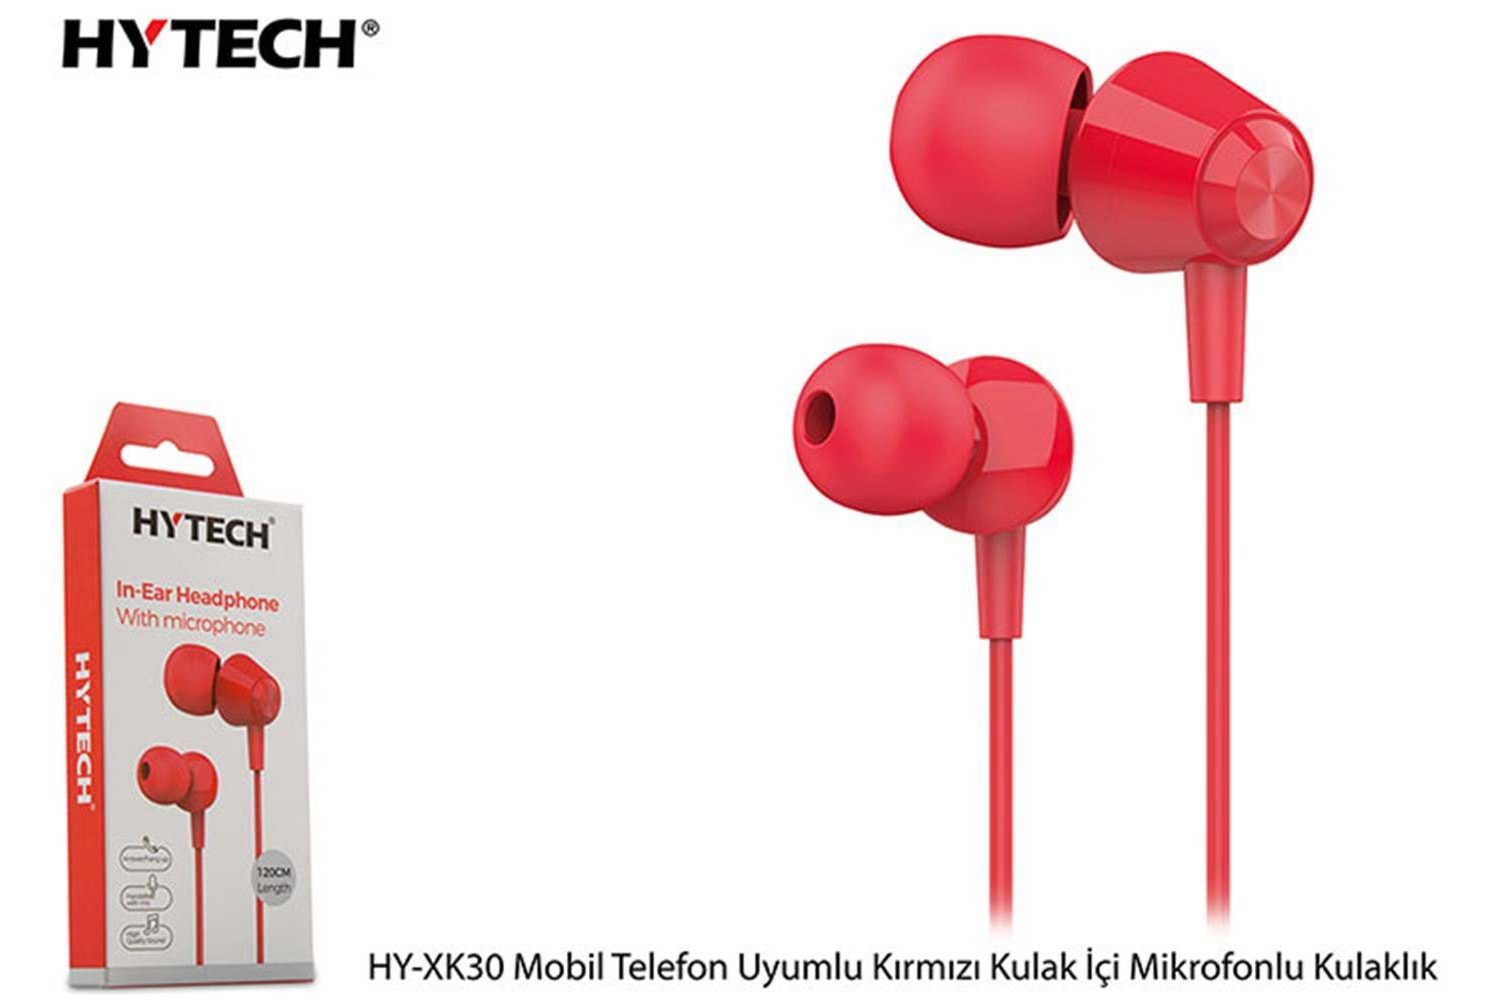 Hytech HY-XK30 Mobil Telefon Uyumlu Kırmızı Kulak İçi Mikrofonlu Kulaklık